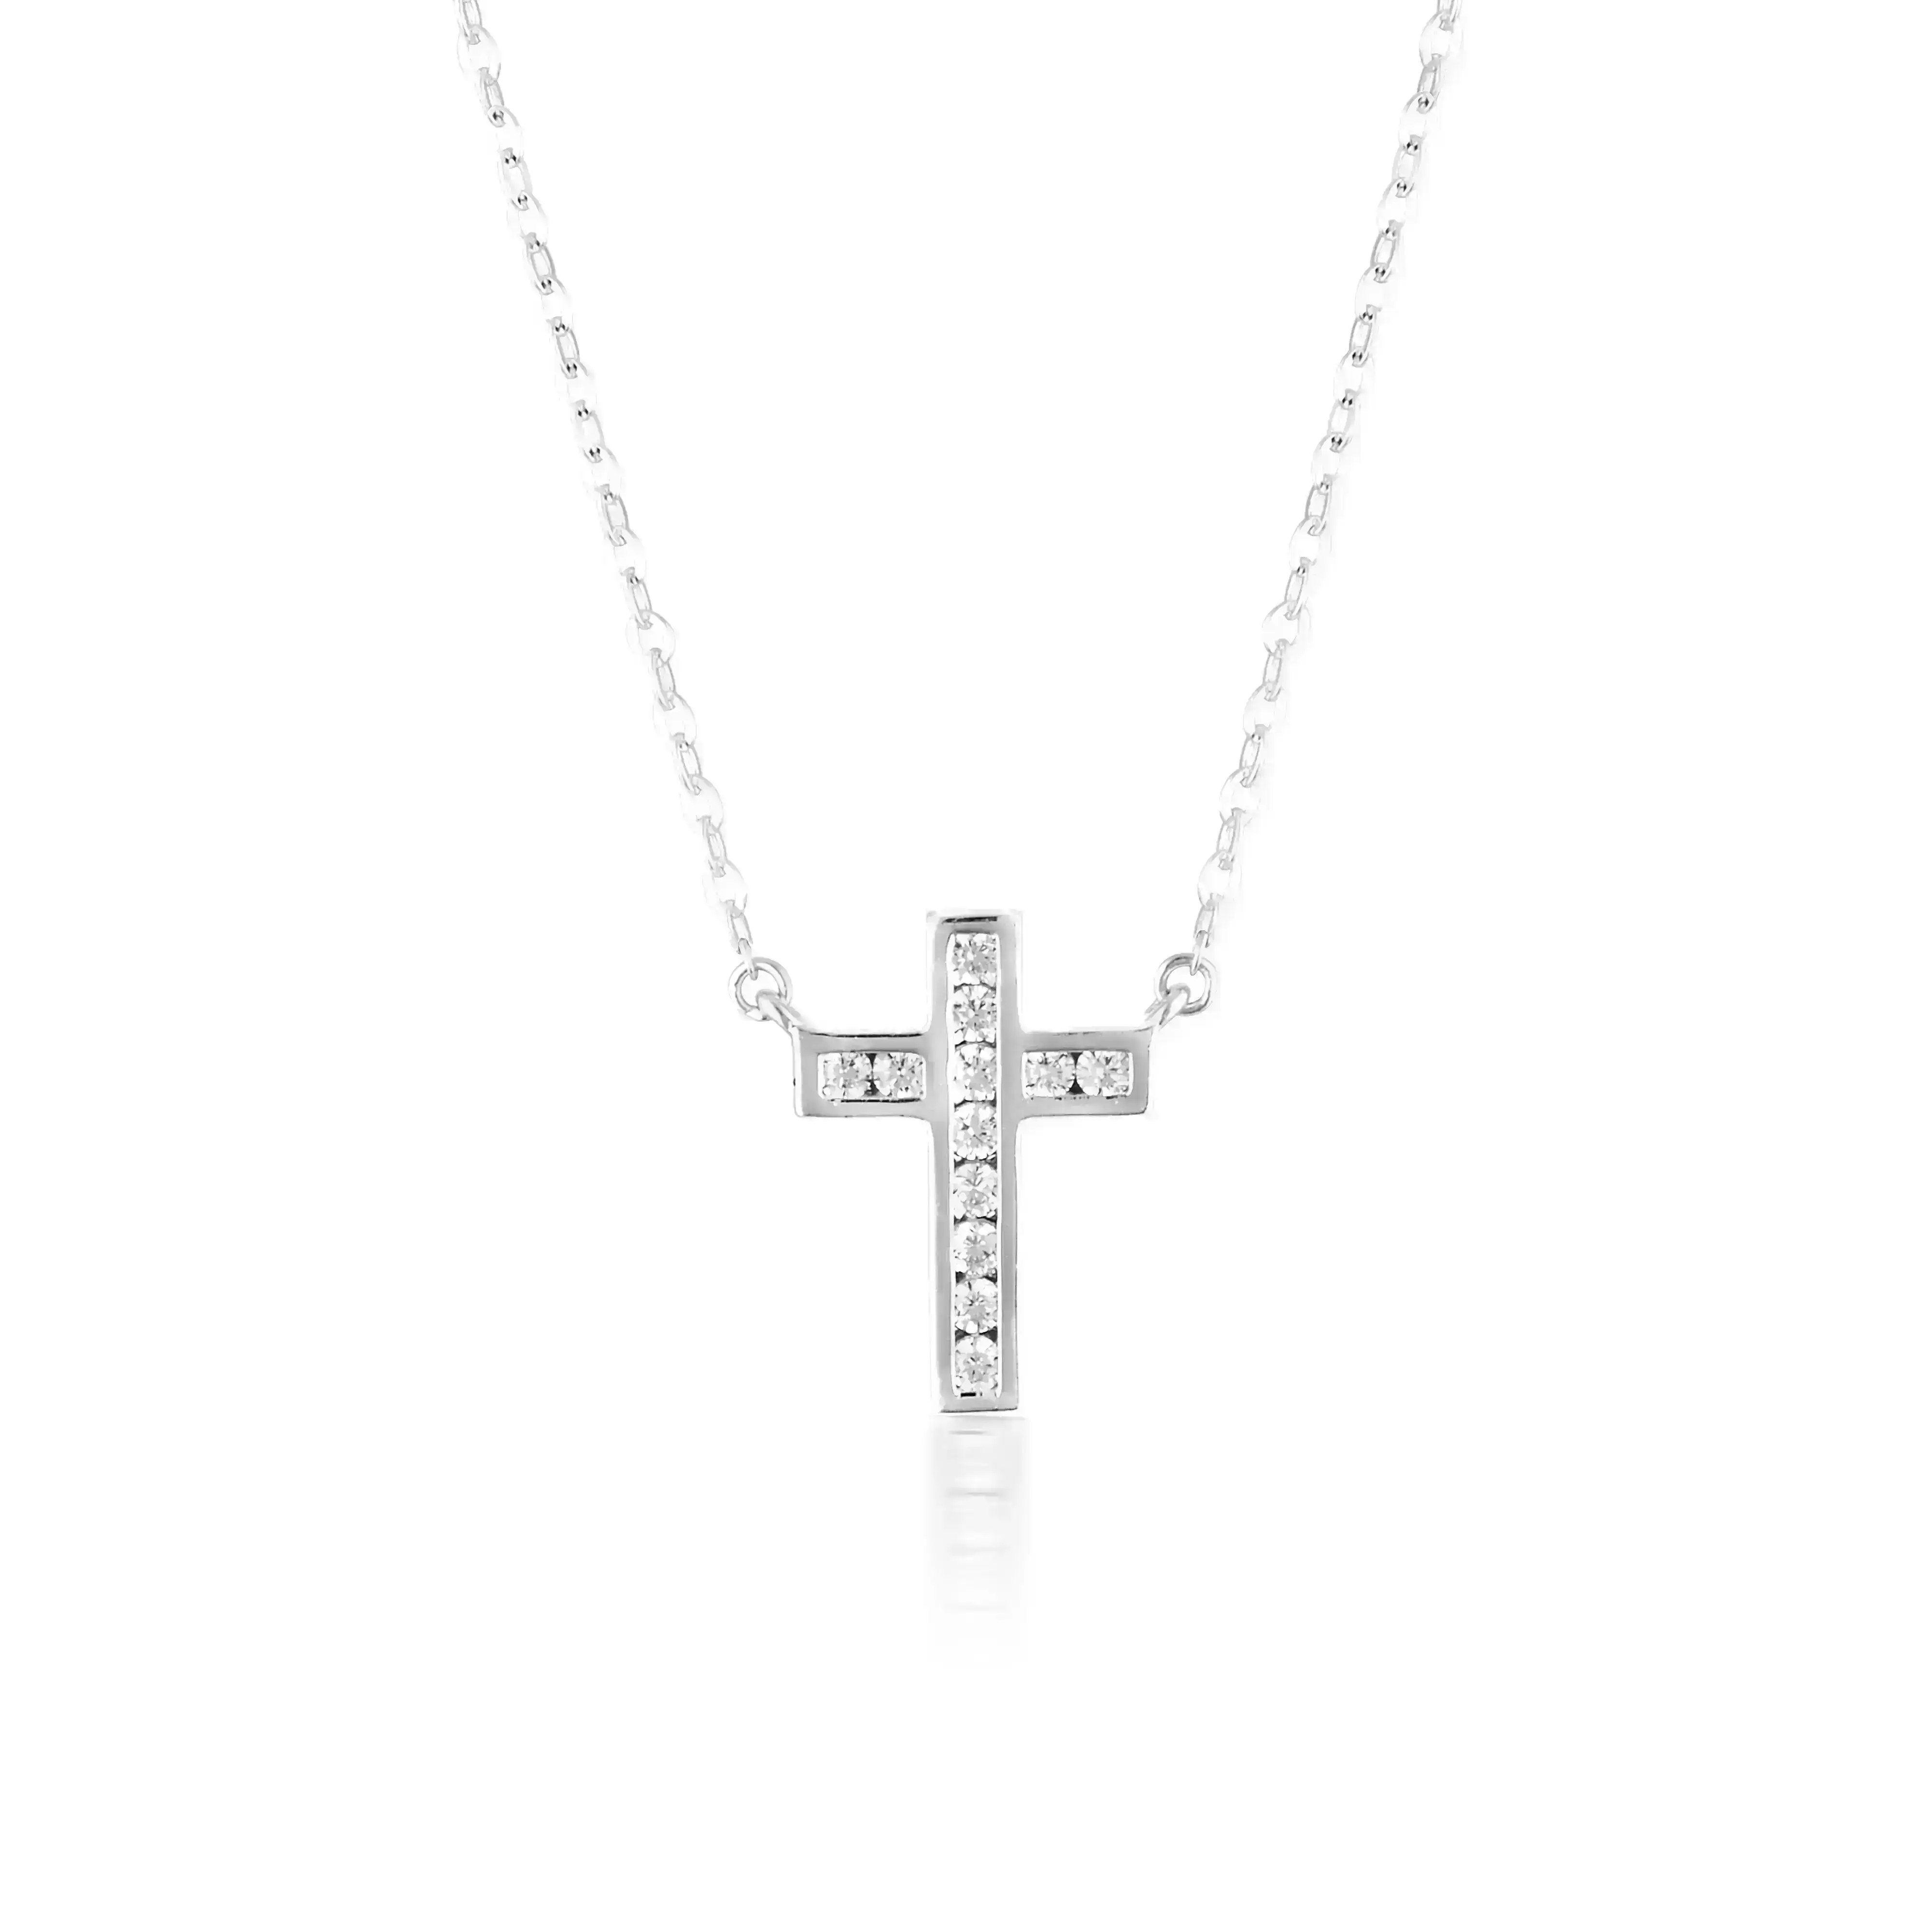 Georgini Spiritus Silver Necklace